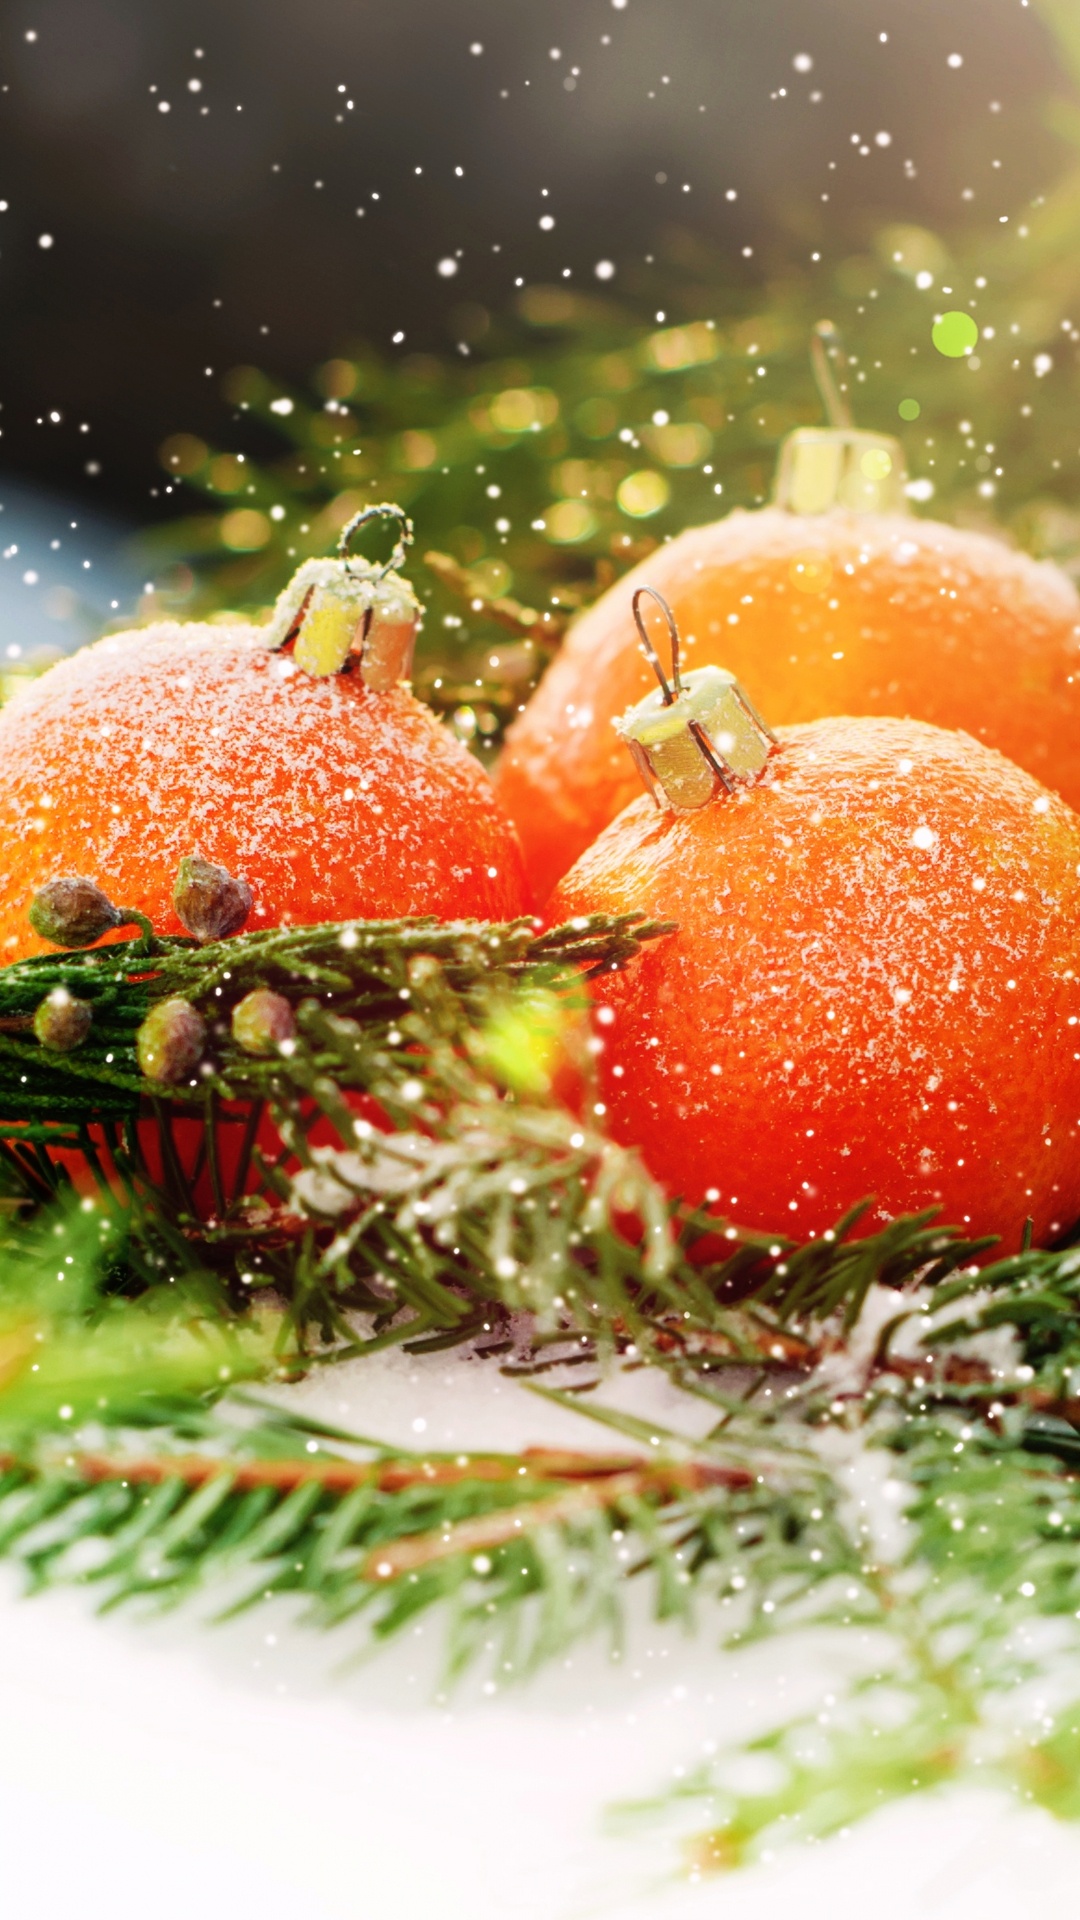 Le Jour De Noël, Nouvelle Année, la Nourriture Végétarienne, Aliment, Fruits. Wallpaper in 1080x1920 Resolution